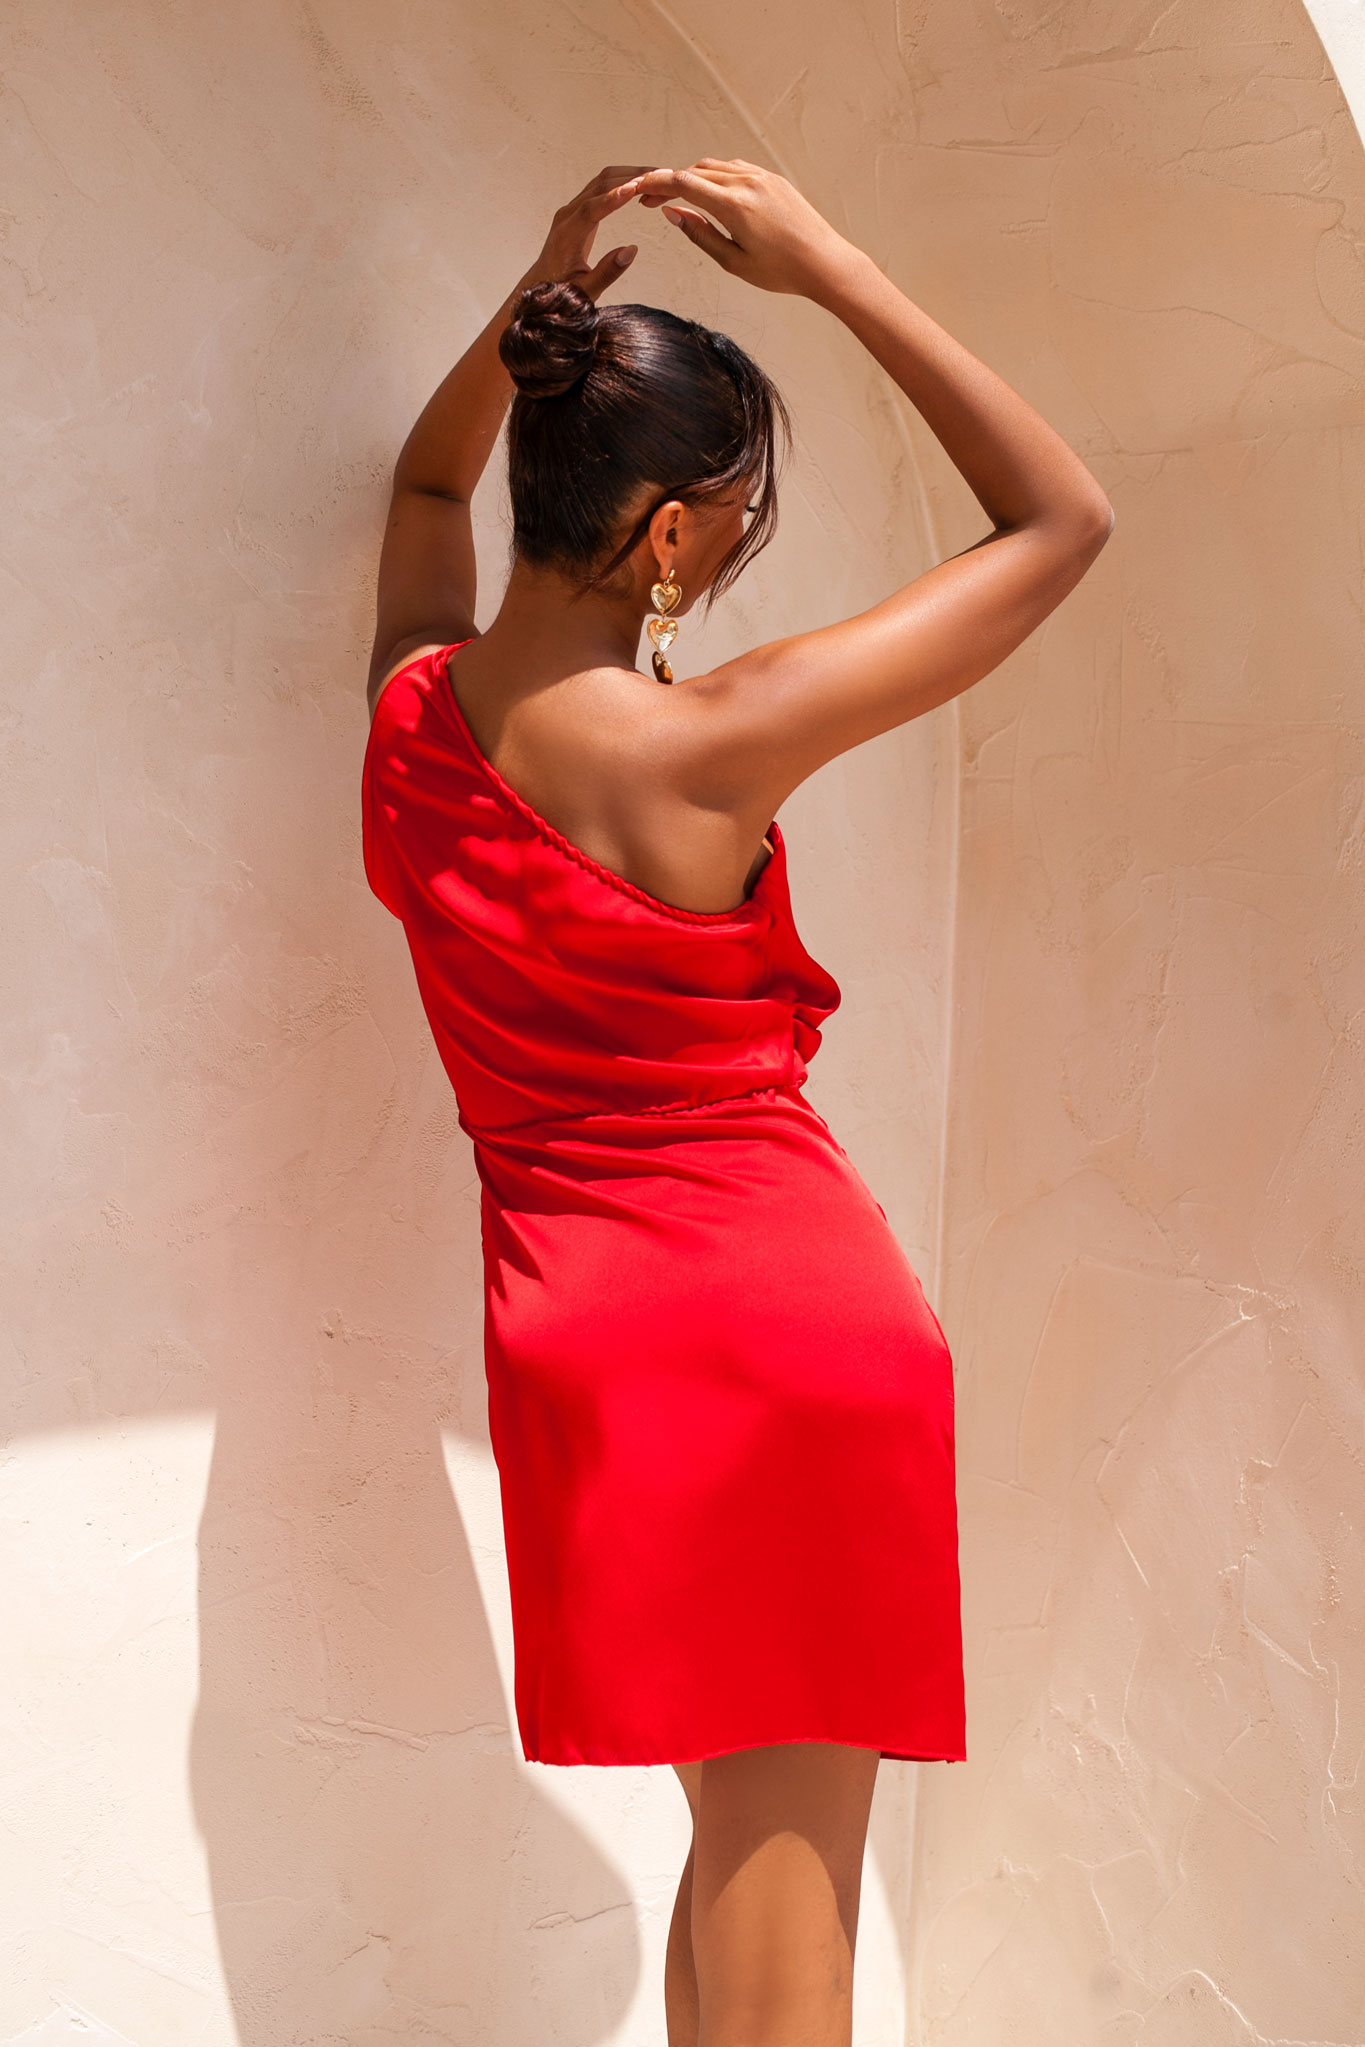 ΓΥΝΑΙΚΕΙΑ ΡΟΥΧΑ Hazelnut μίνι φόρεμα με έναν ώμο με όψη σατέν κόκκινο